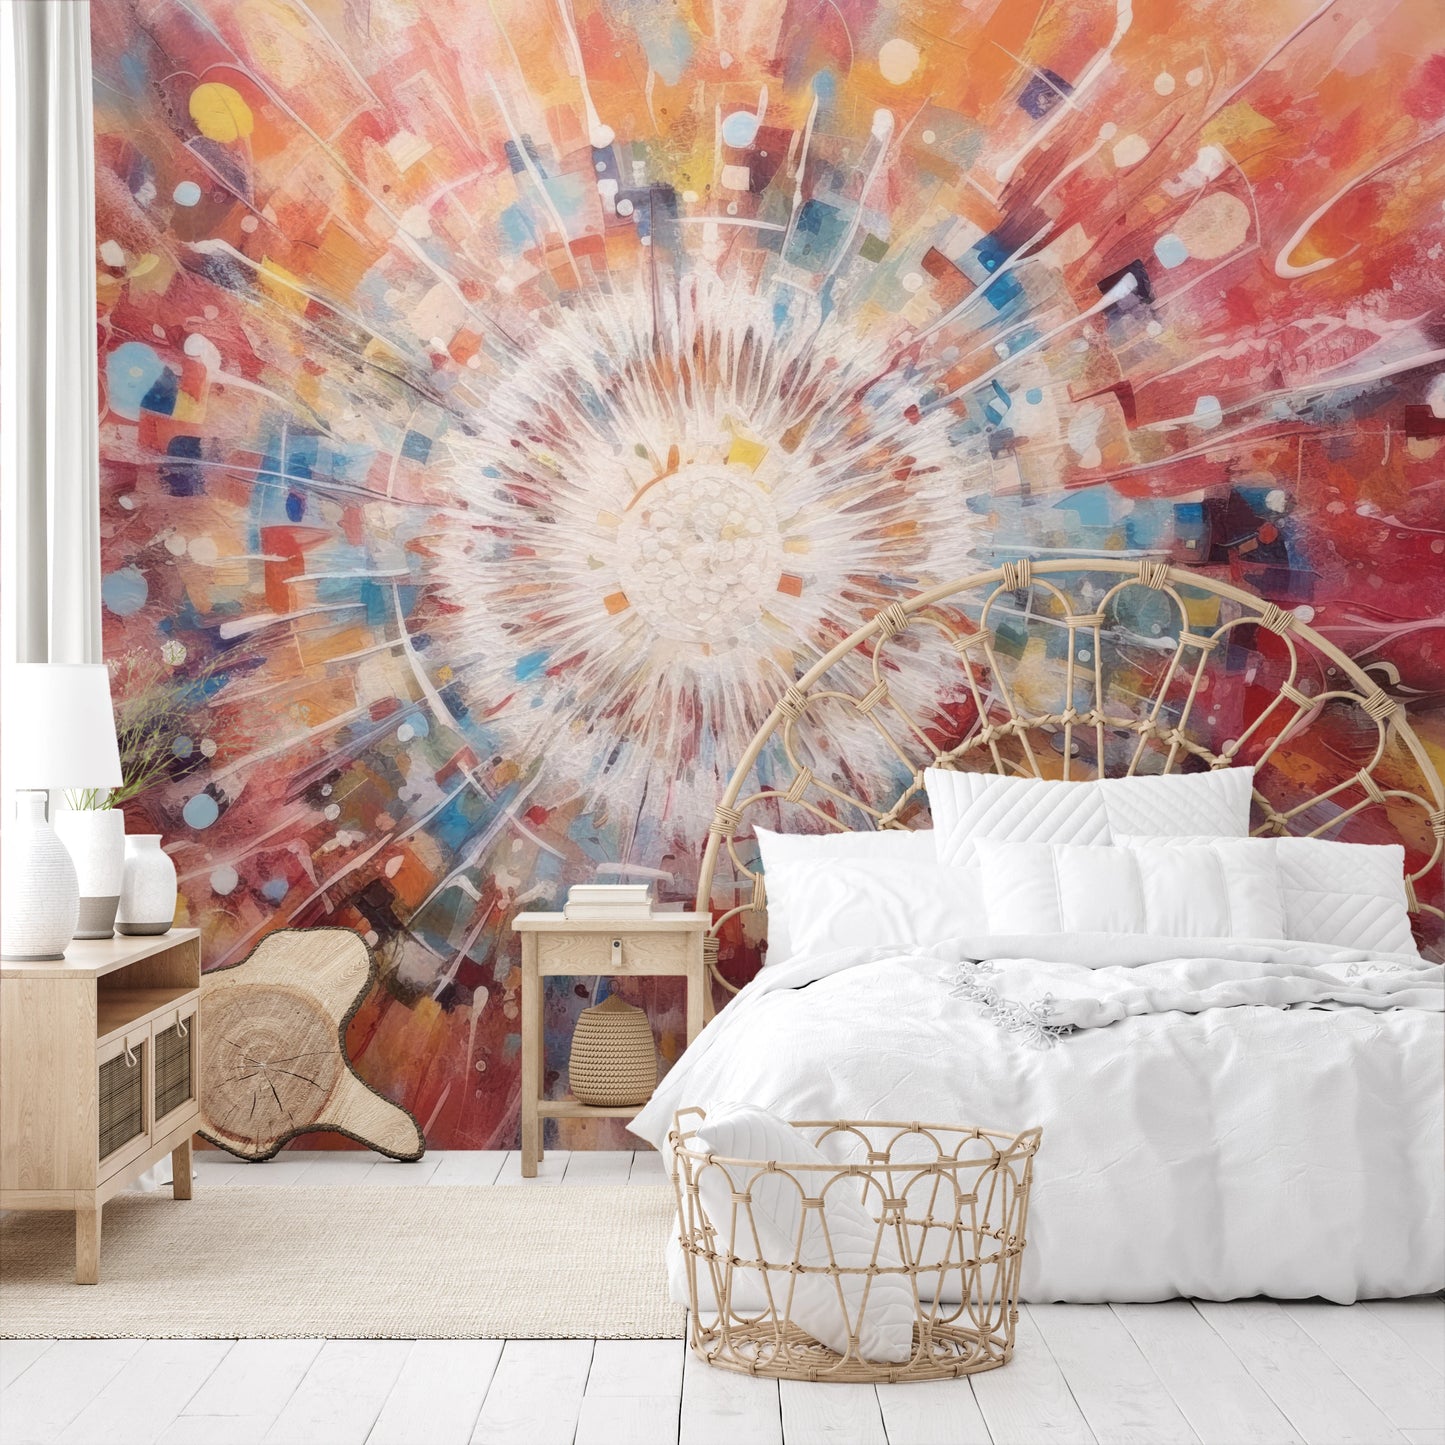 Fototapeta malowana o nazwie Cosmic Explosion pokazana w aranżacji wnętrza.